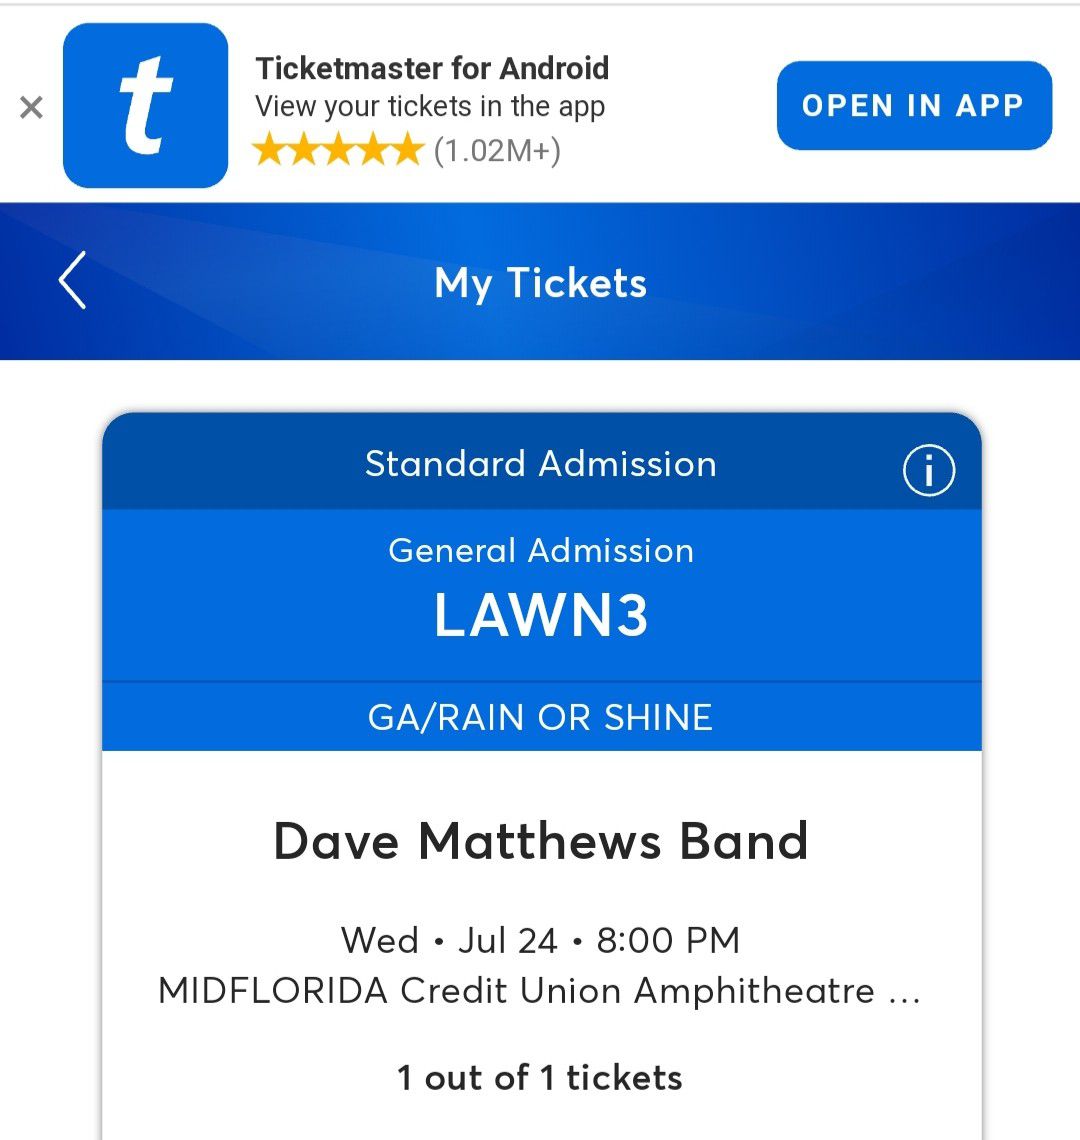 Dave Matthews Band ticket